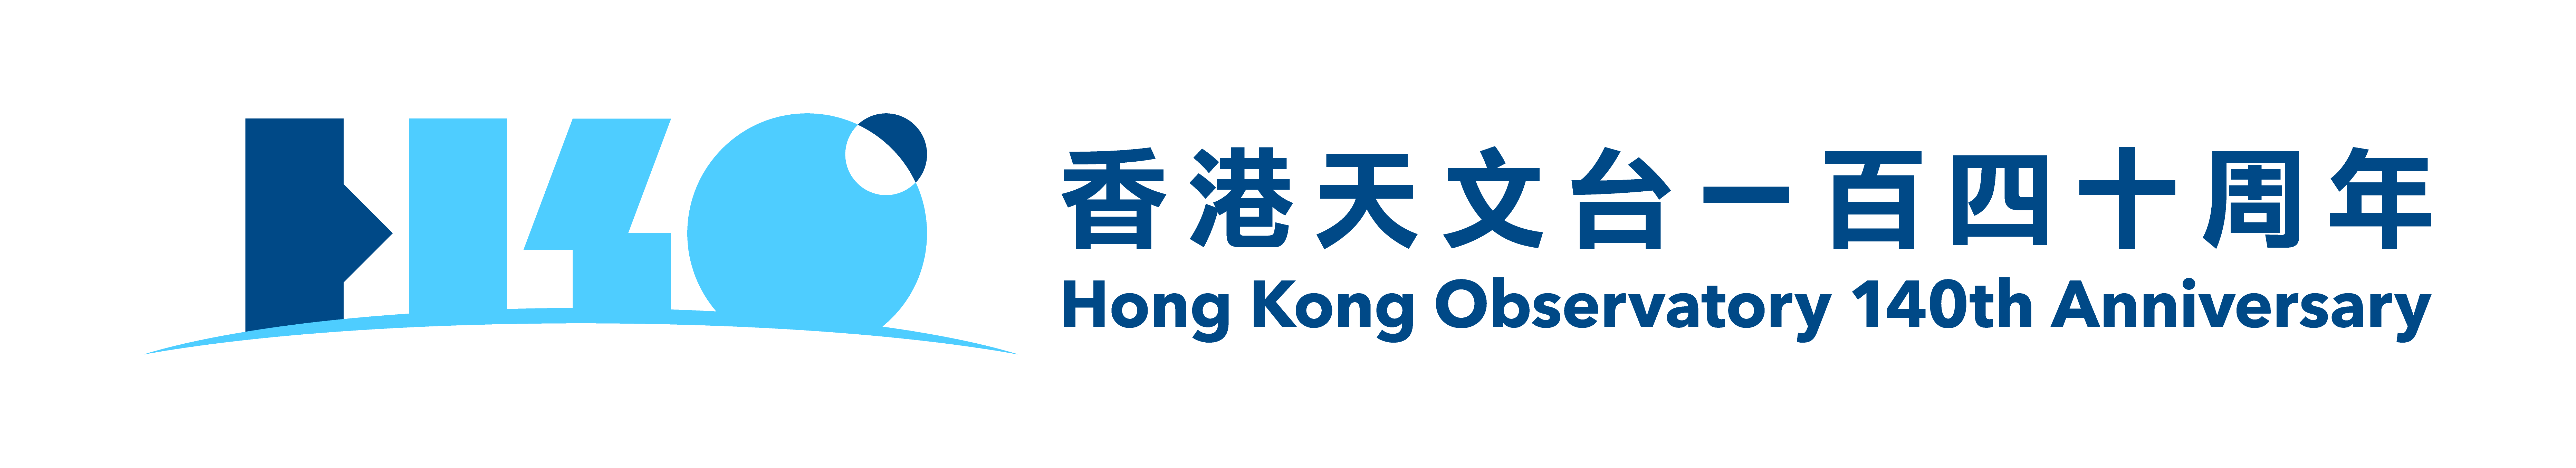 HKO 140 logo.